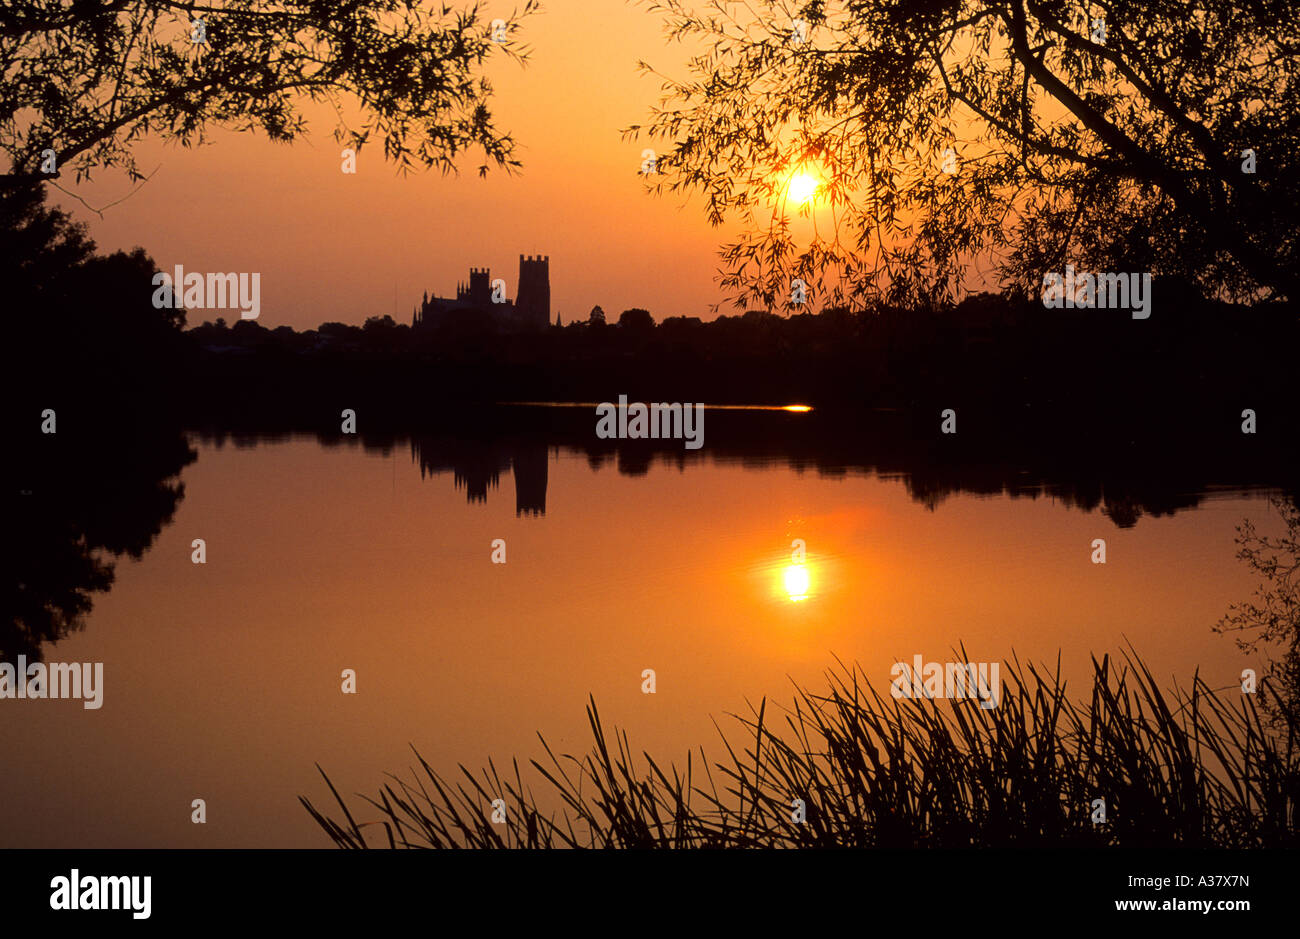 Cathédrale d'Ely, silhouette, Red Sunset, Cambridgeshire, East Anglia, Royaume-Uni, Angleterre, l'architecture médiévale, lac, paysage, eau Banque D'Images